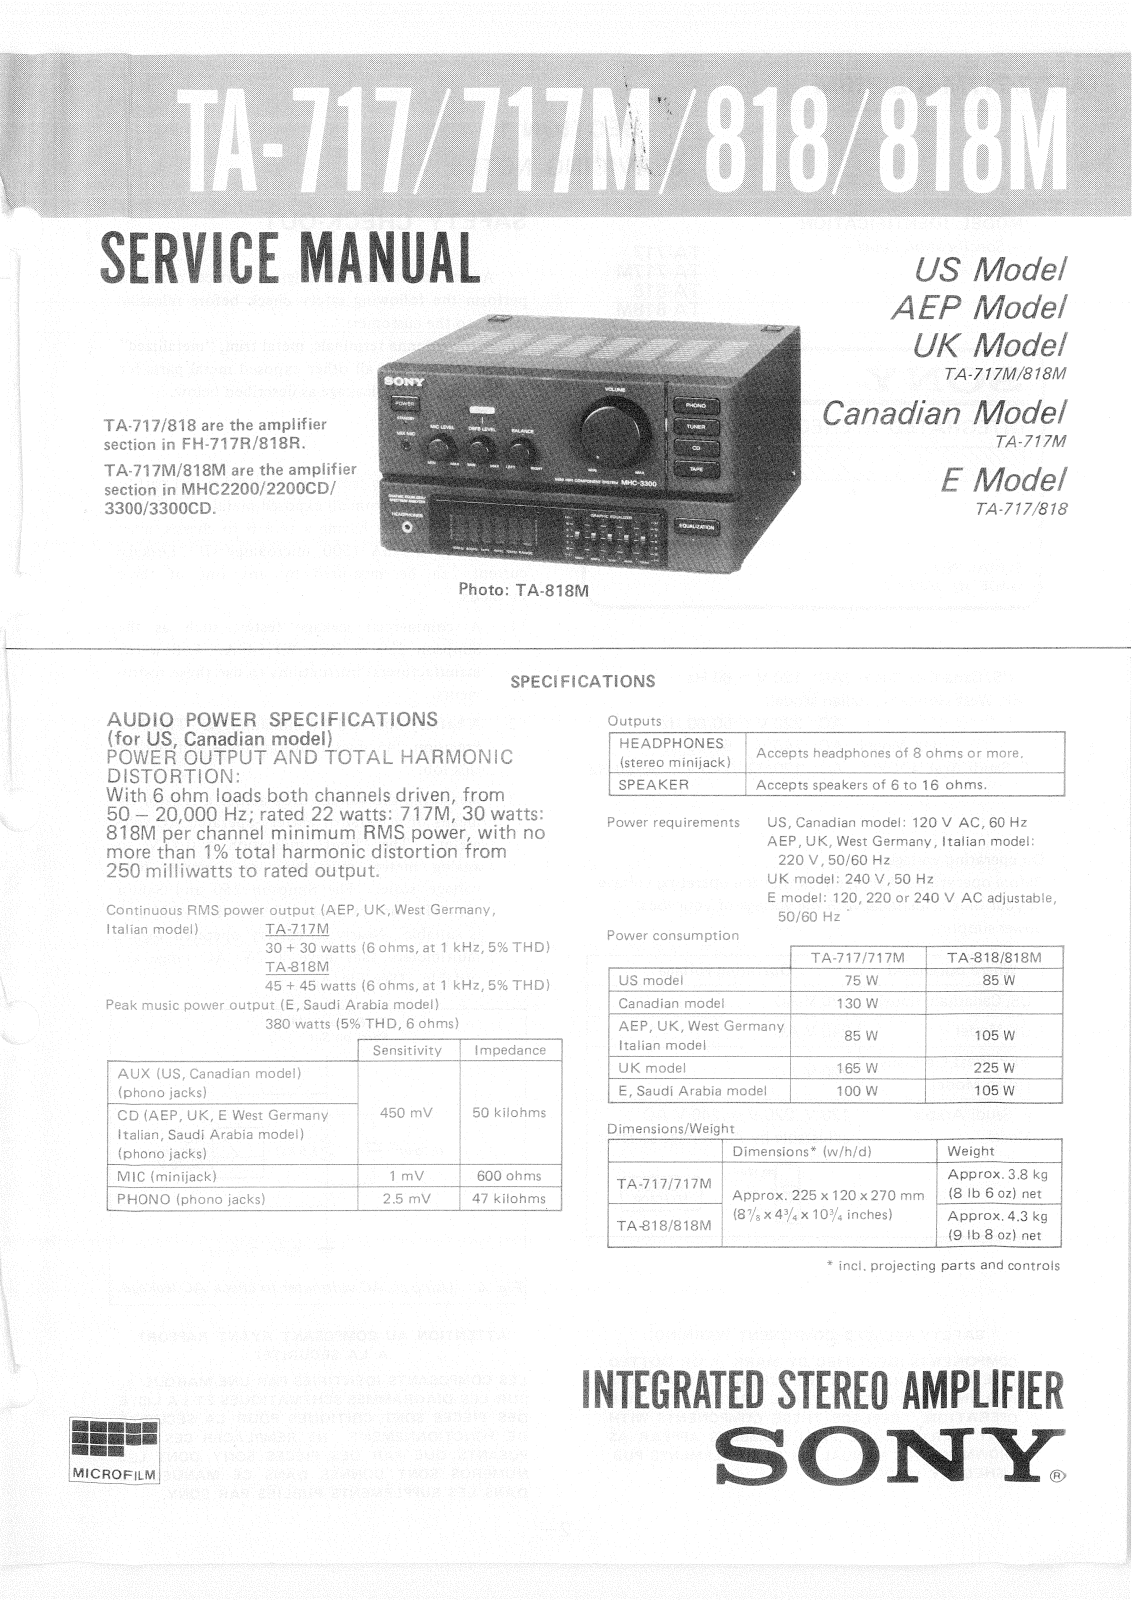 Sony TA-818M, TA-818, TA-717M, TA-717 Service Manual